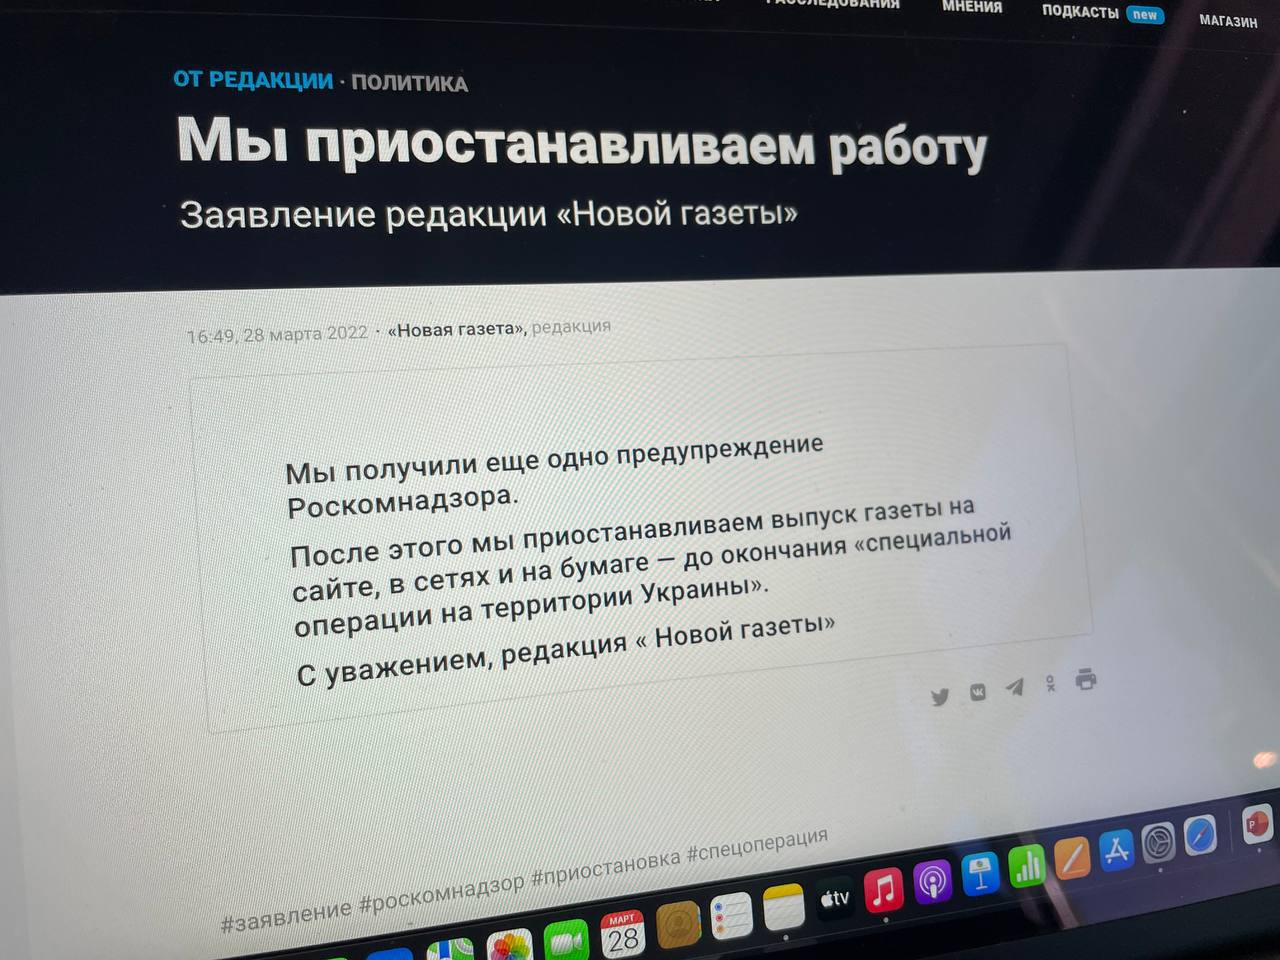 Российское СМИ «Новая газета» приостановило работу 